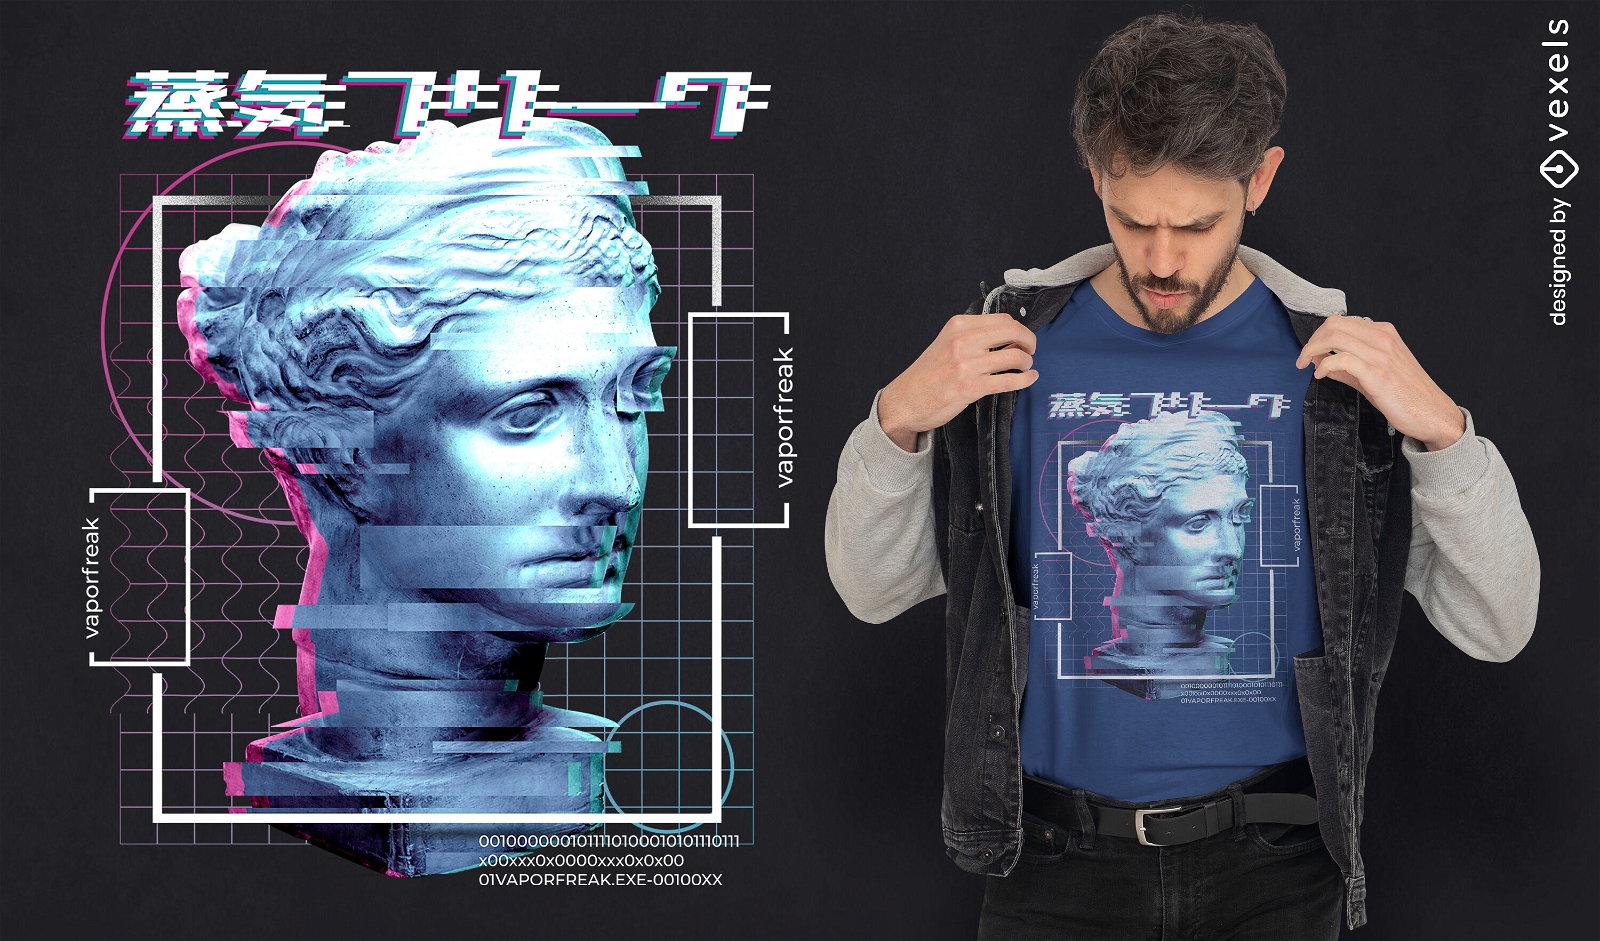 Glitch face statue t-shirt design